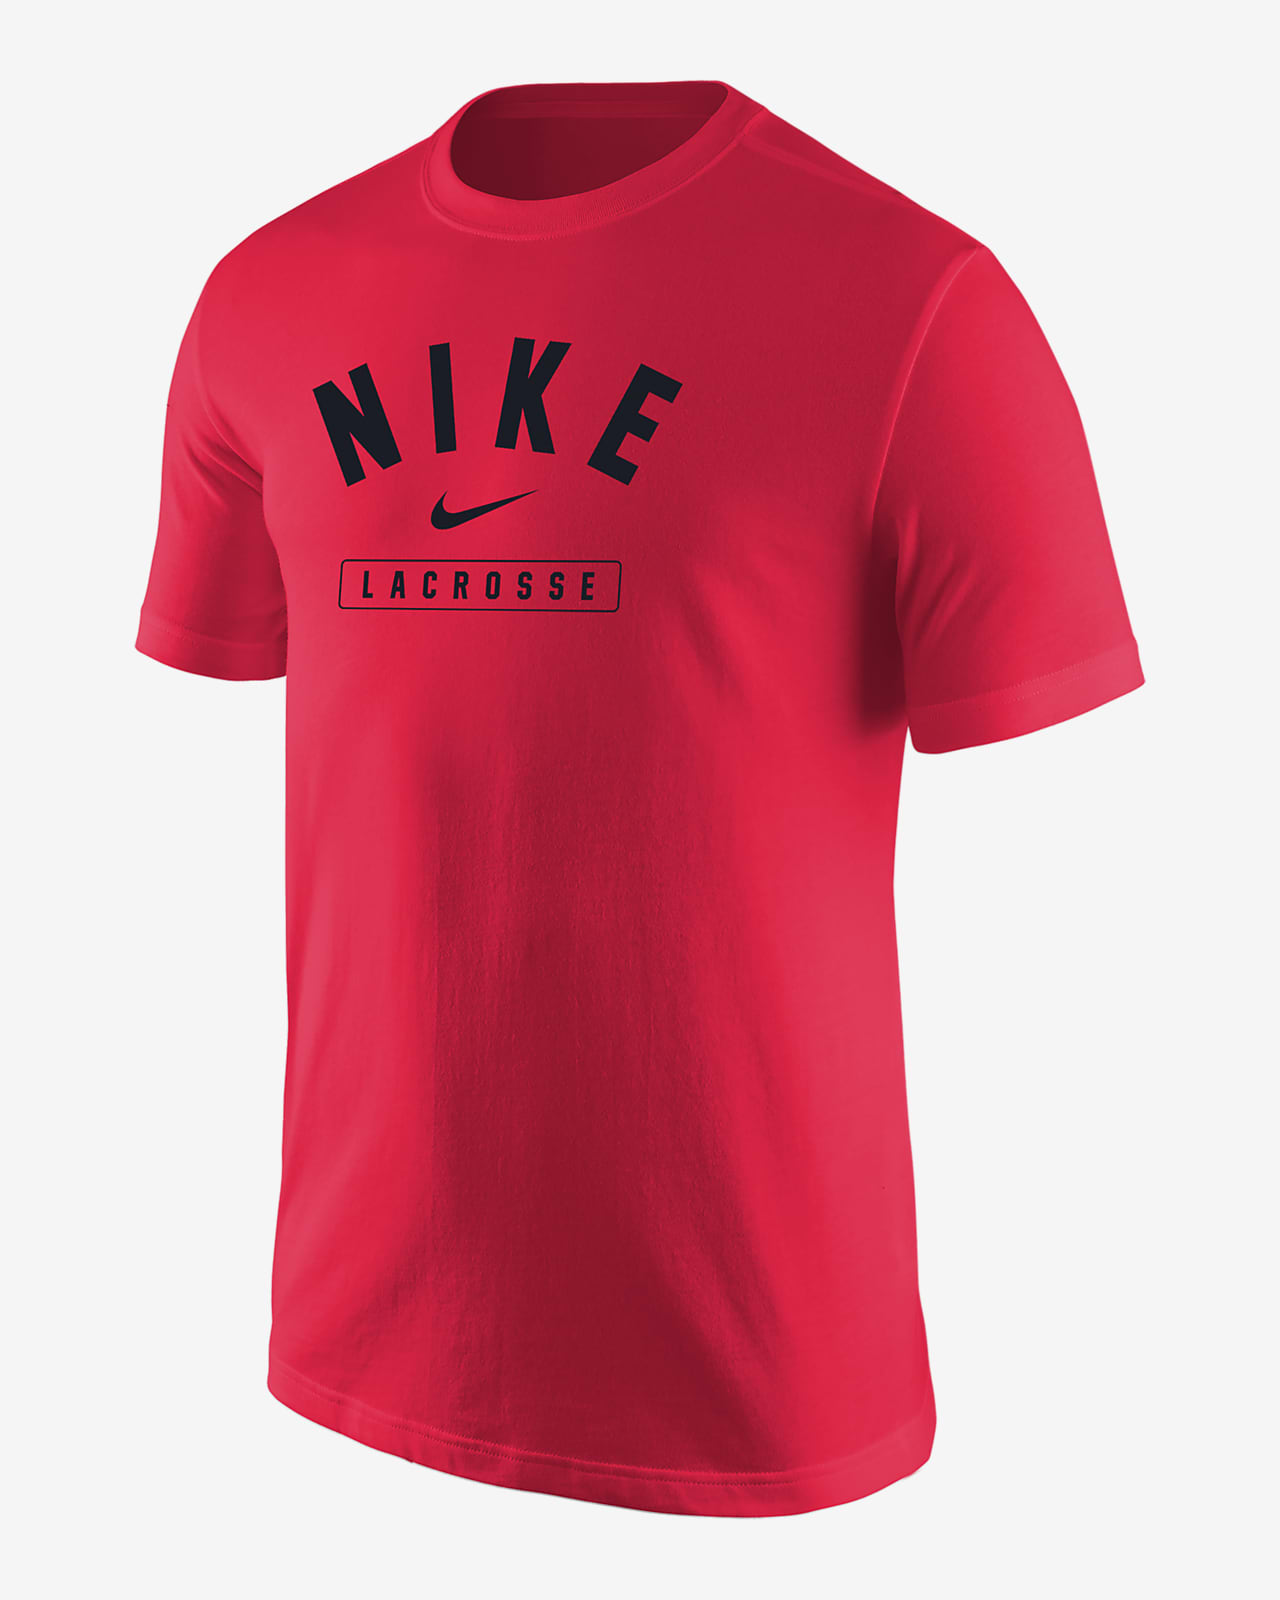 Nike Lacrosse Men's T-Shirt